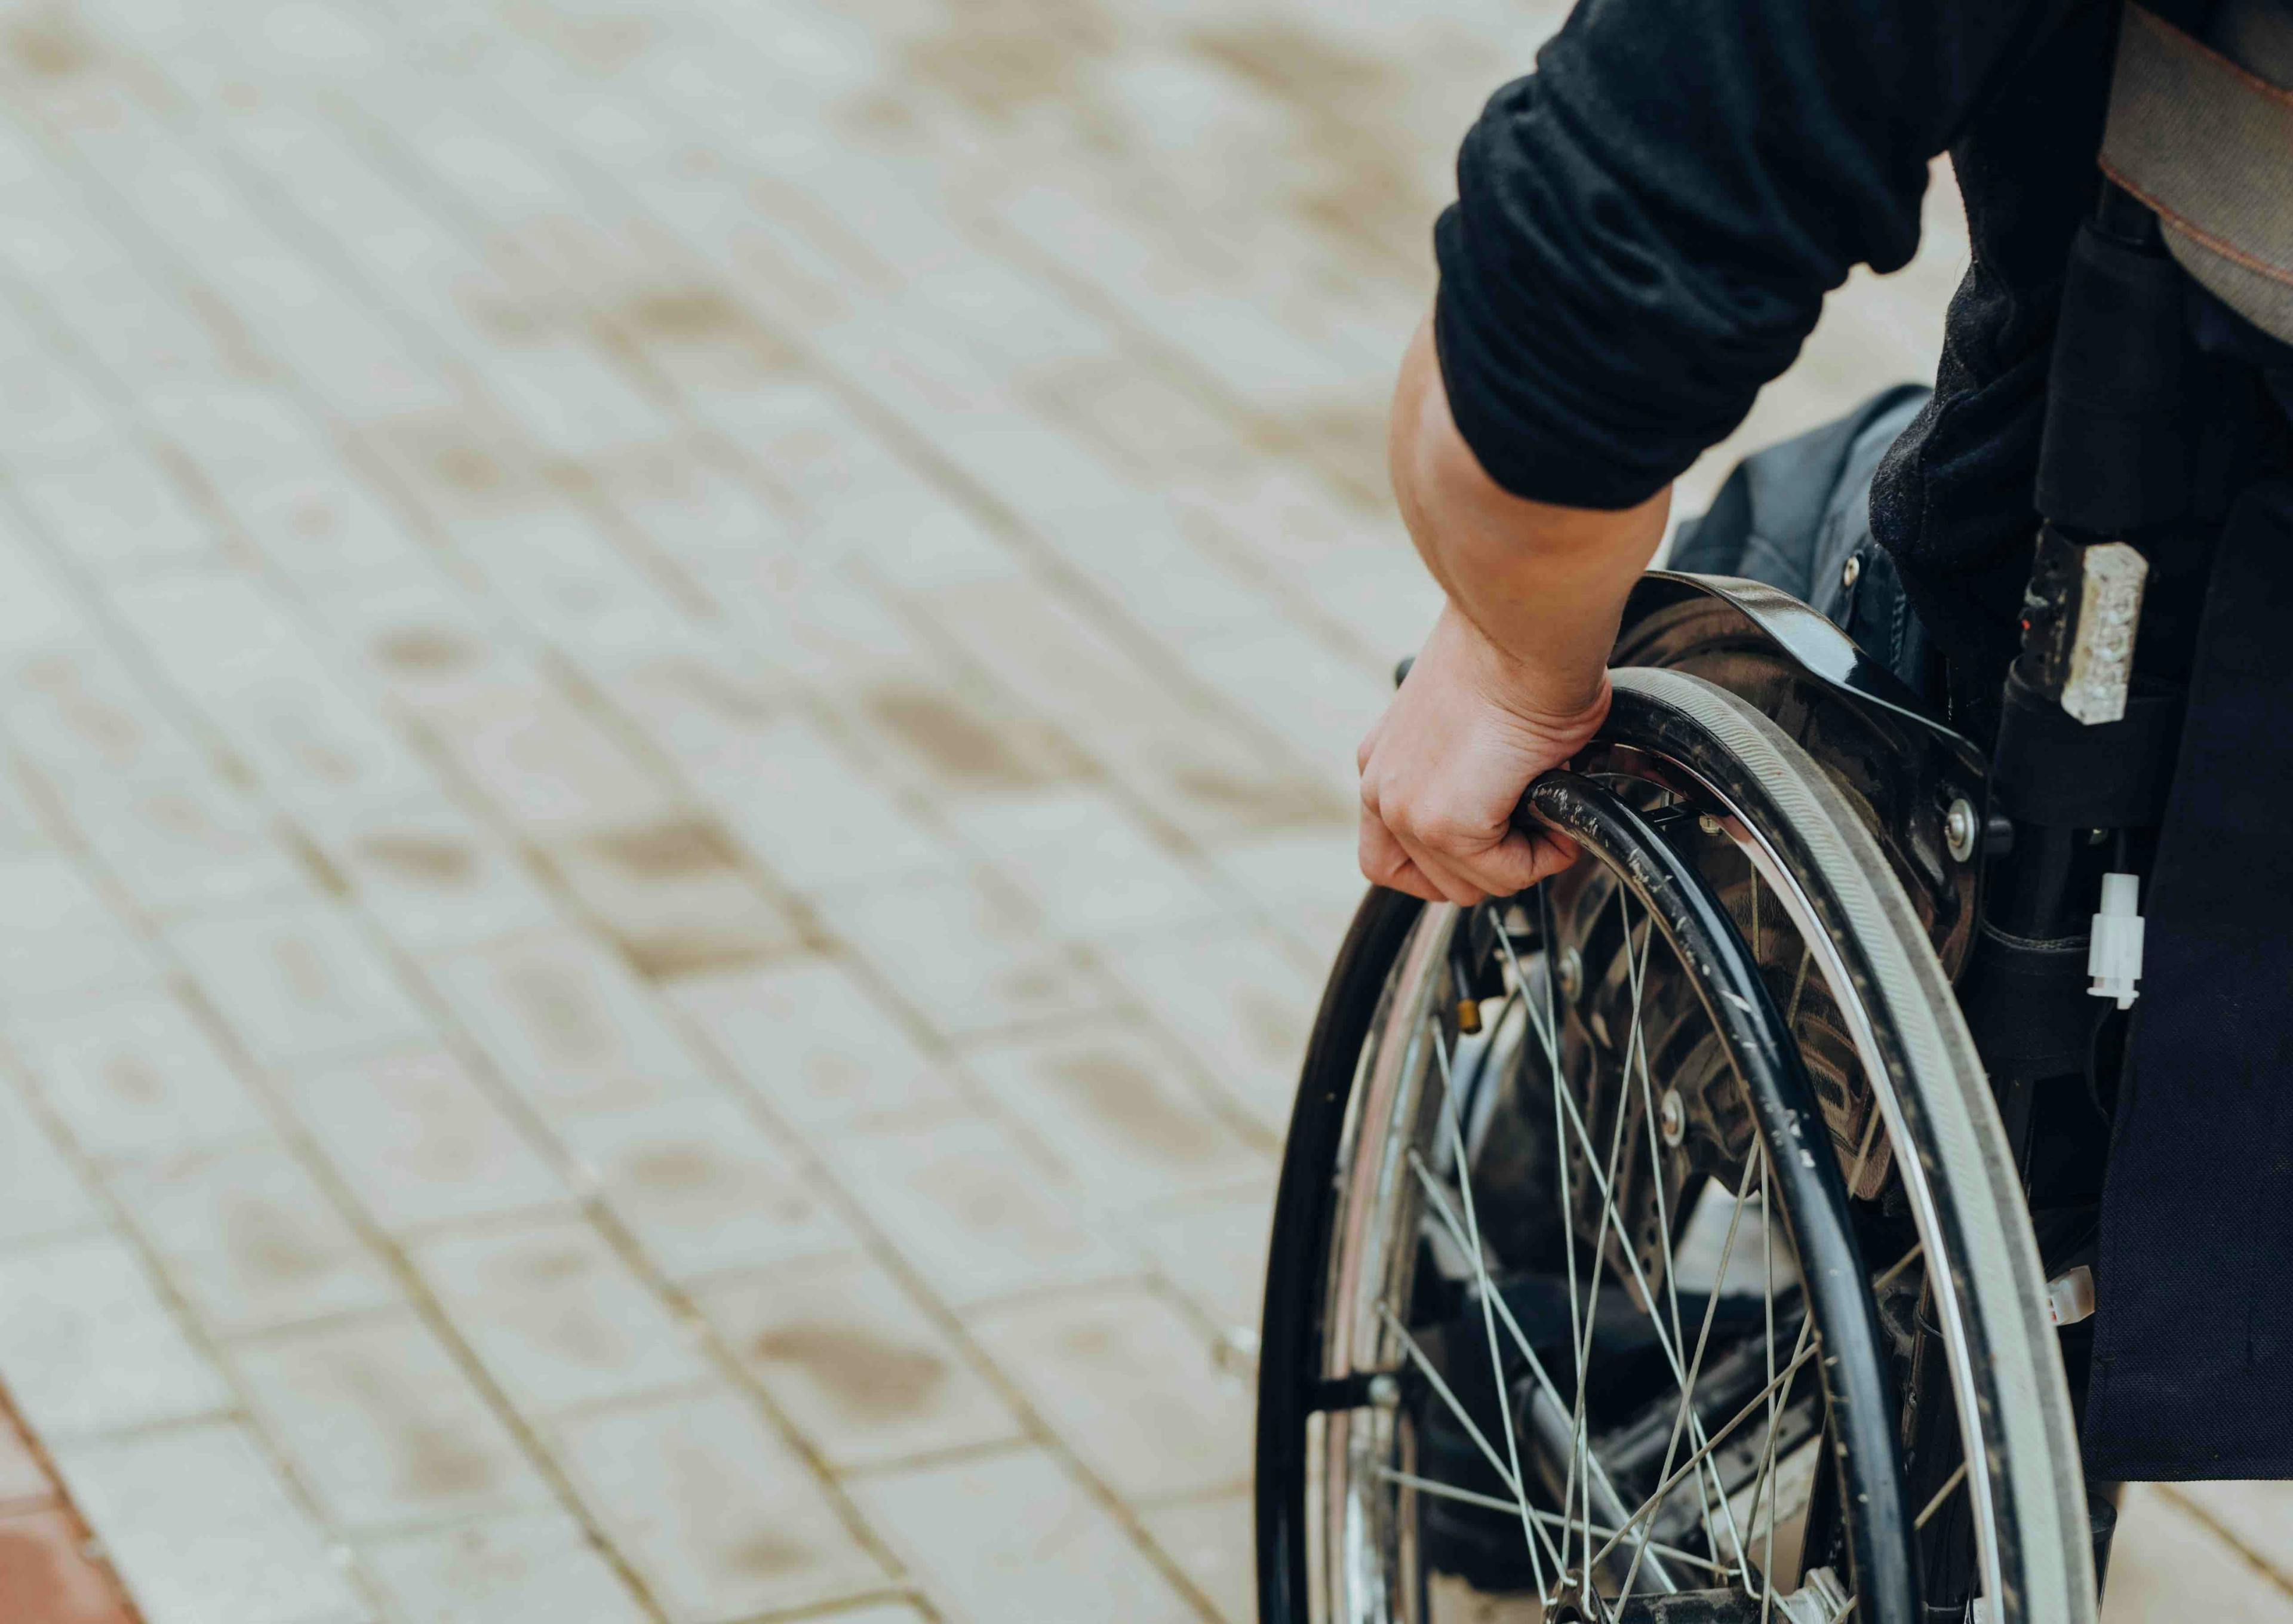 Person in wheelchair | Image credit: Nana_studio - stock.adobe.com